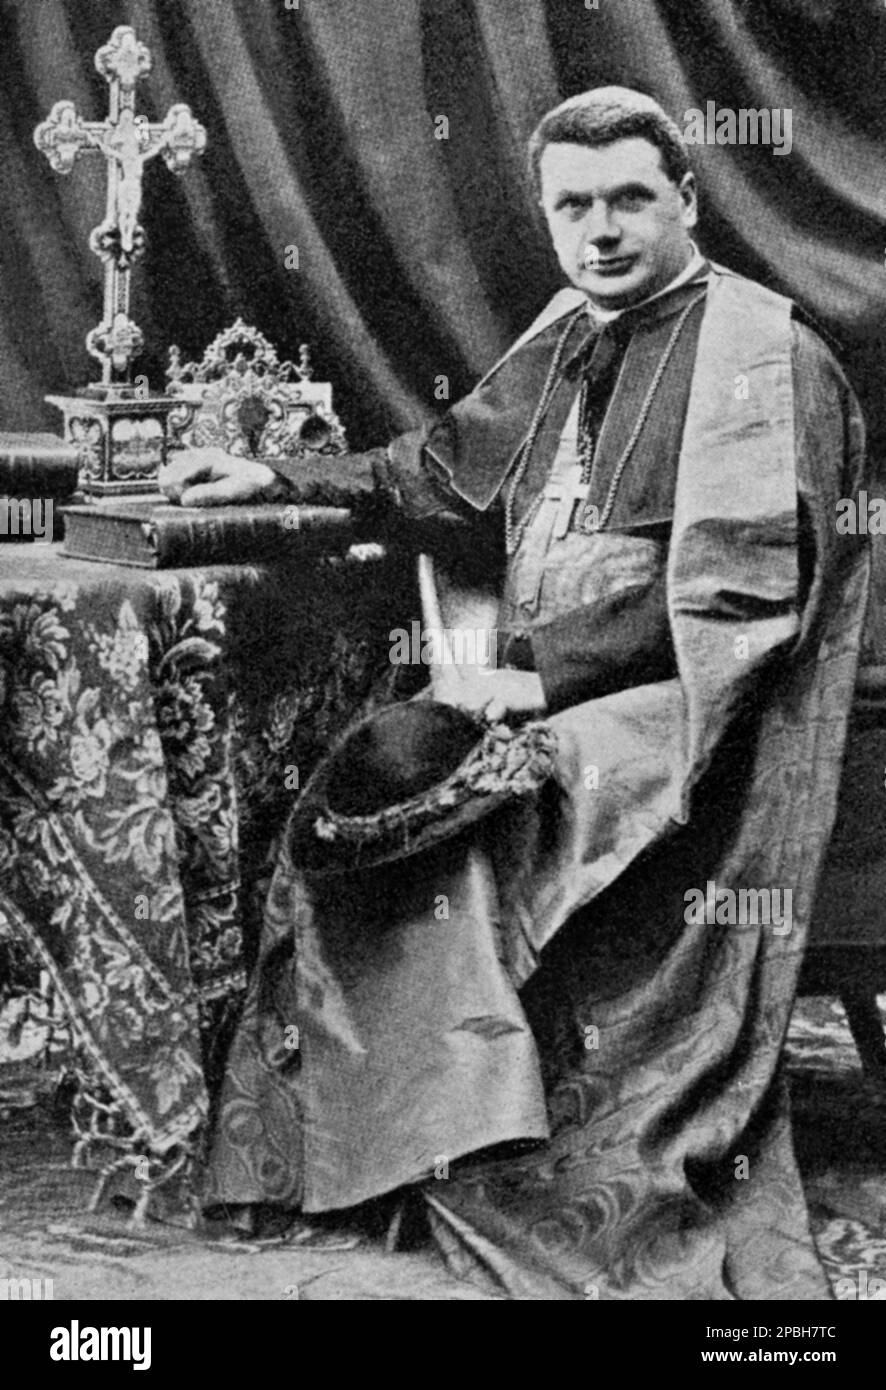 1914 ca : l'astronome italien et le prélat cardinal PIETRO MAFFI ( Corteolona 1858 – Pise 1931 ). Il a servi comme archevêque de Pise de 1903 jusqu'à sa mort, et a été élevé au cardinalate en 1907. Il a été élevé au grade de Chamberlain privé de sa Sainteté la même année, et a enseigné la philosophie et les sciences au séminaire de Pavie, dont il a également été recteur. Maffi a fondé l'observatoire météorologique et le Musée d'Histoire naturelle de Pavie, ainsi que le directeur et l'éditeur de Rivista di scienze fisiche e matematiche. Plus tard, Maffi a été nommé Pro-Vicaire général de Pavie A. Banque D'Images